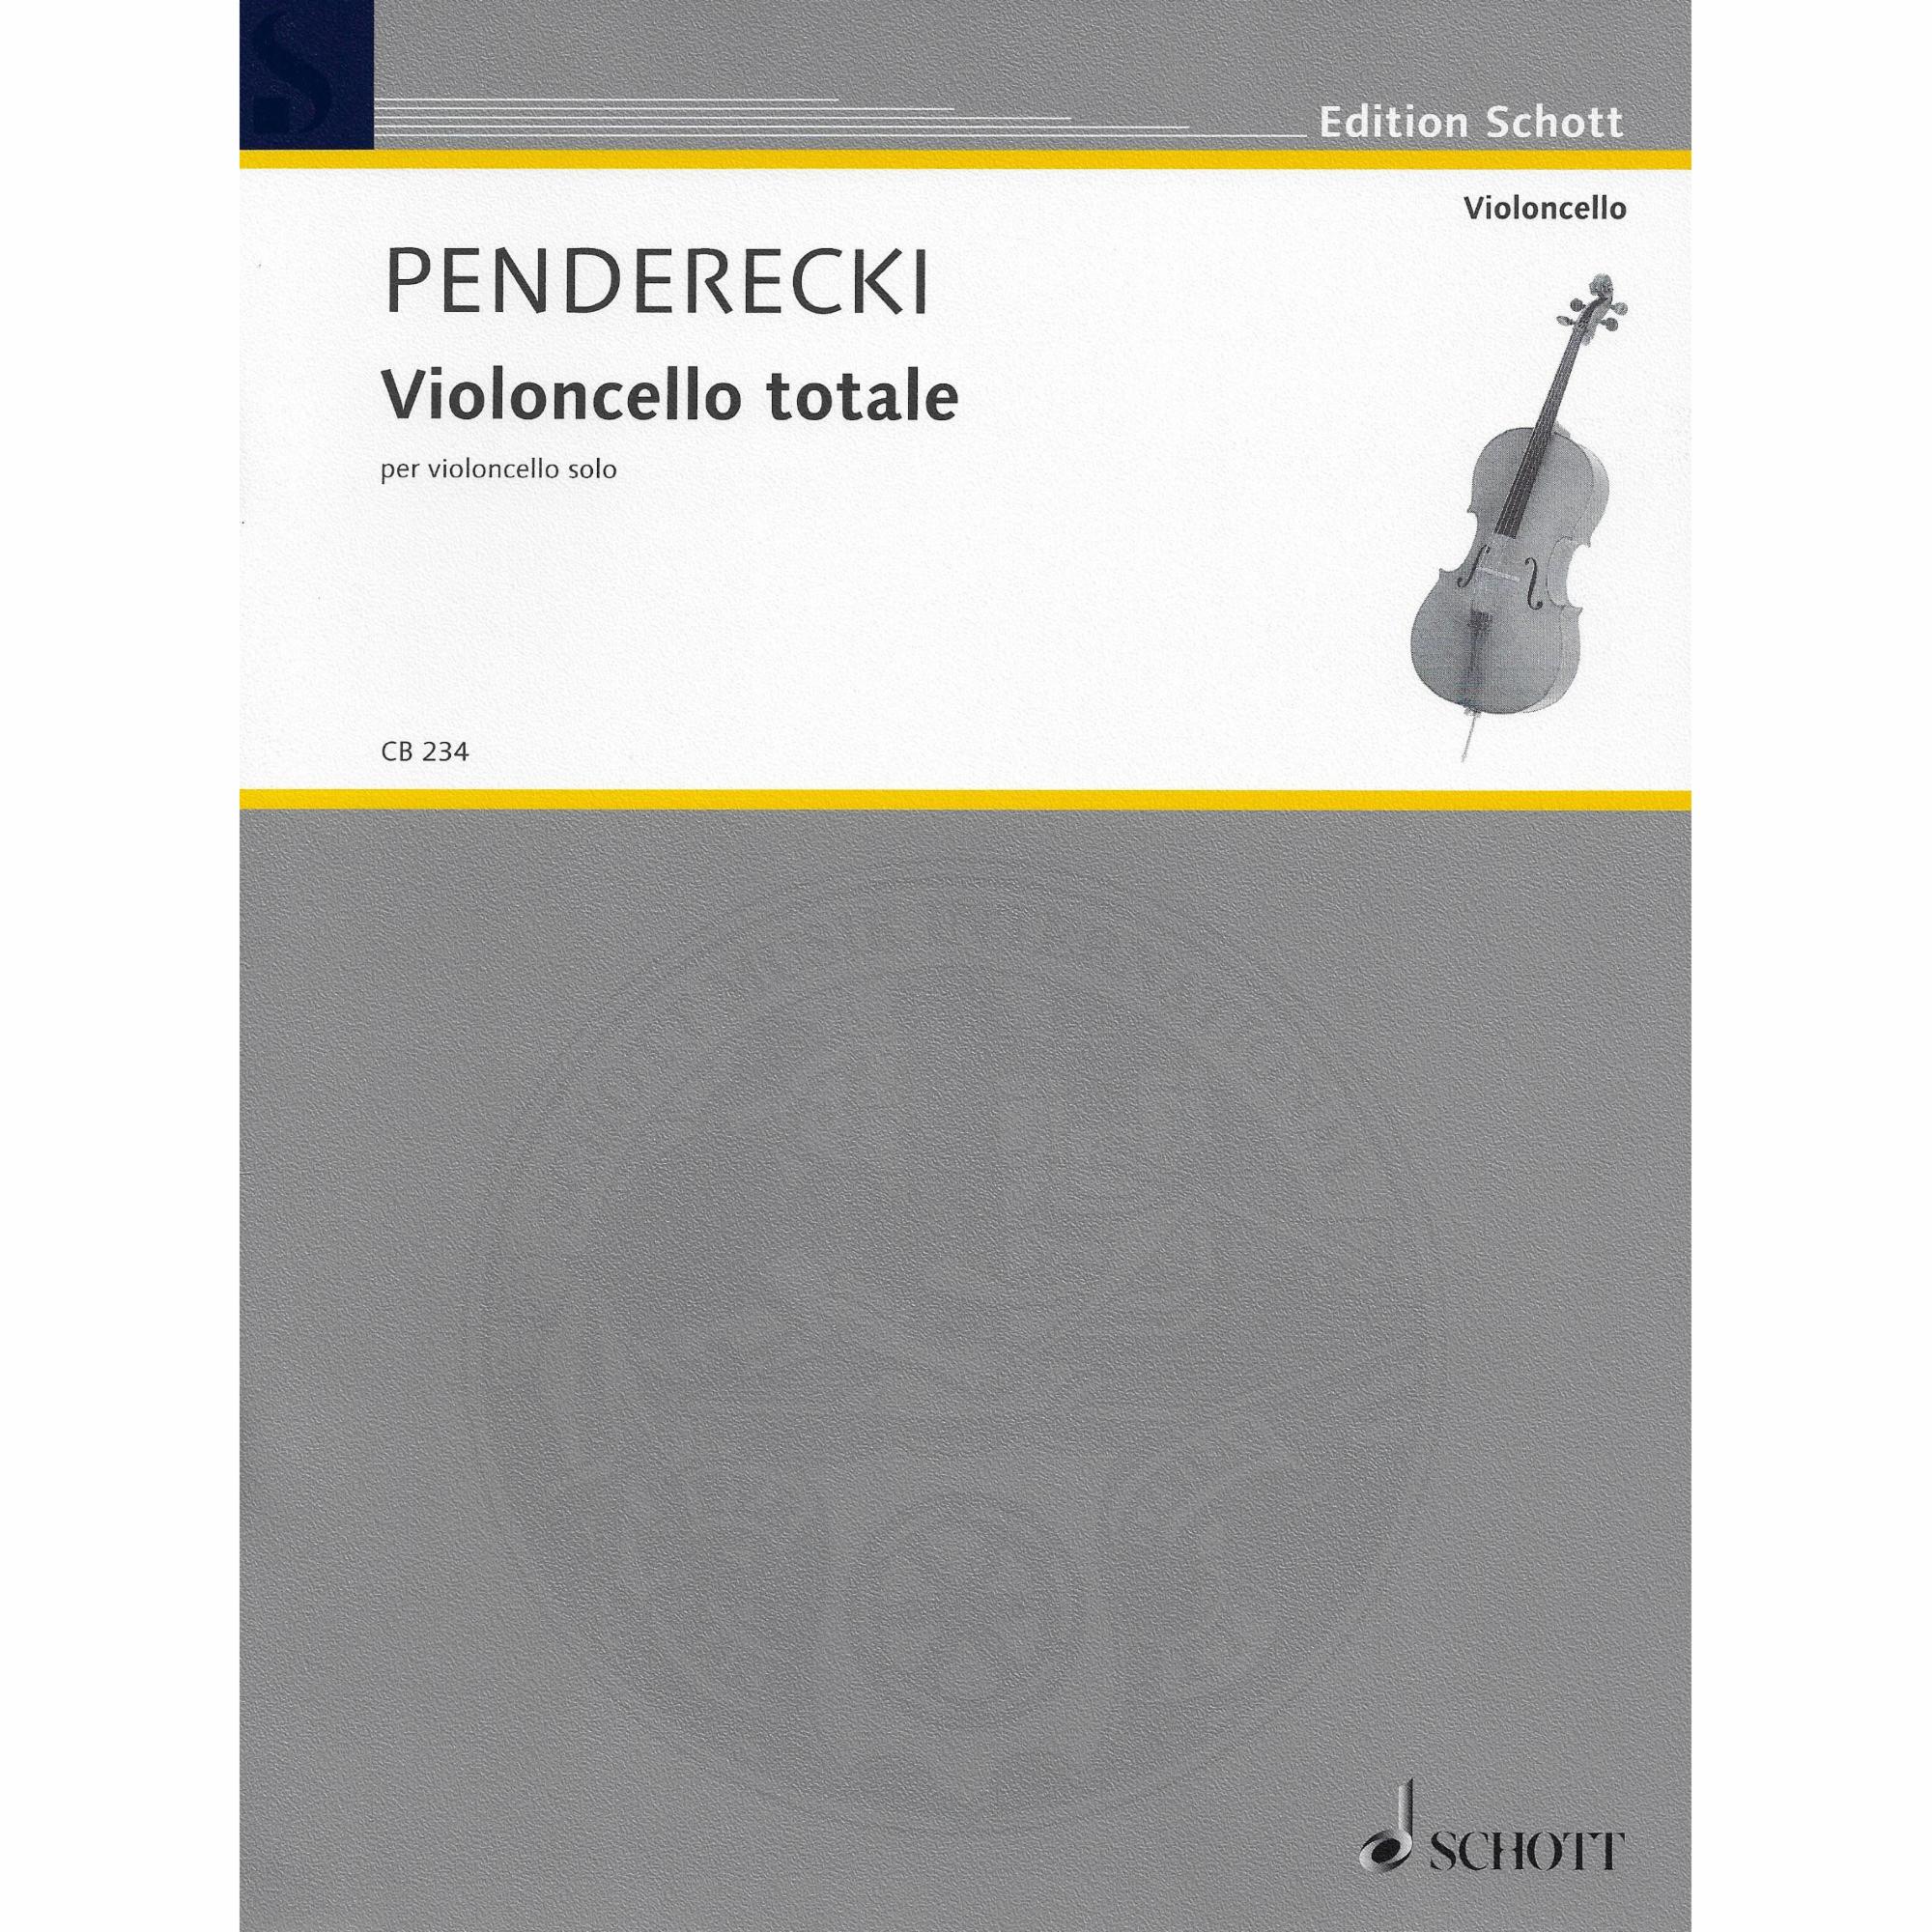 Penderecki -- Violoncello totale for Solo Cello